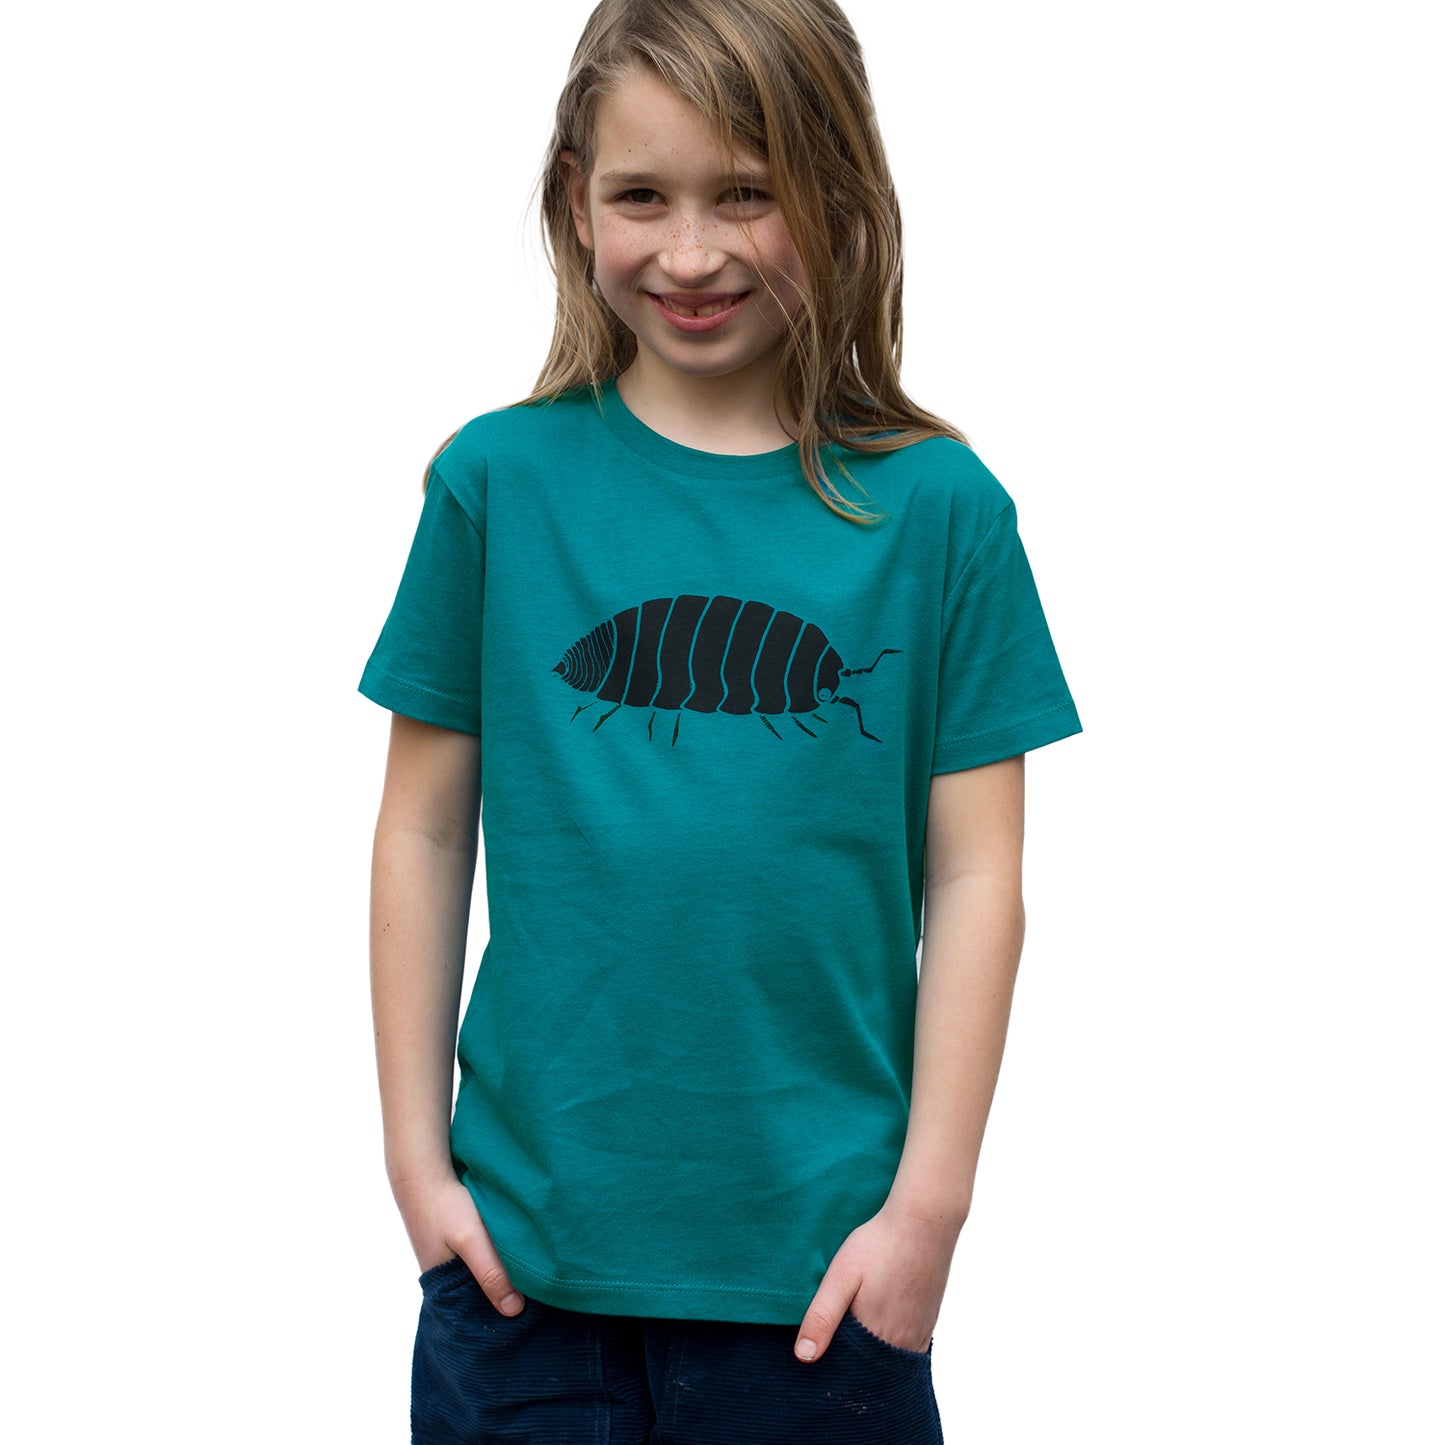 Greta Assel T-Shirt in ocean depth